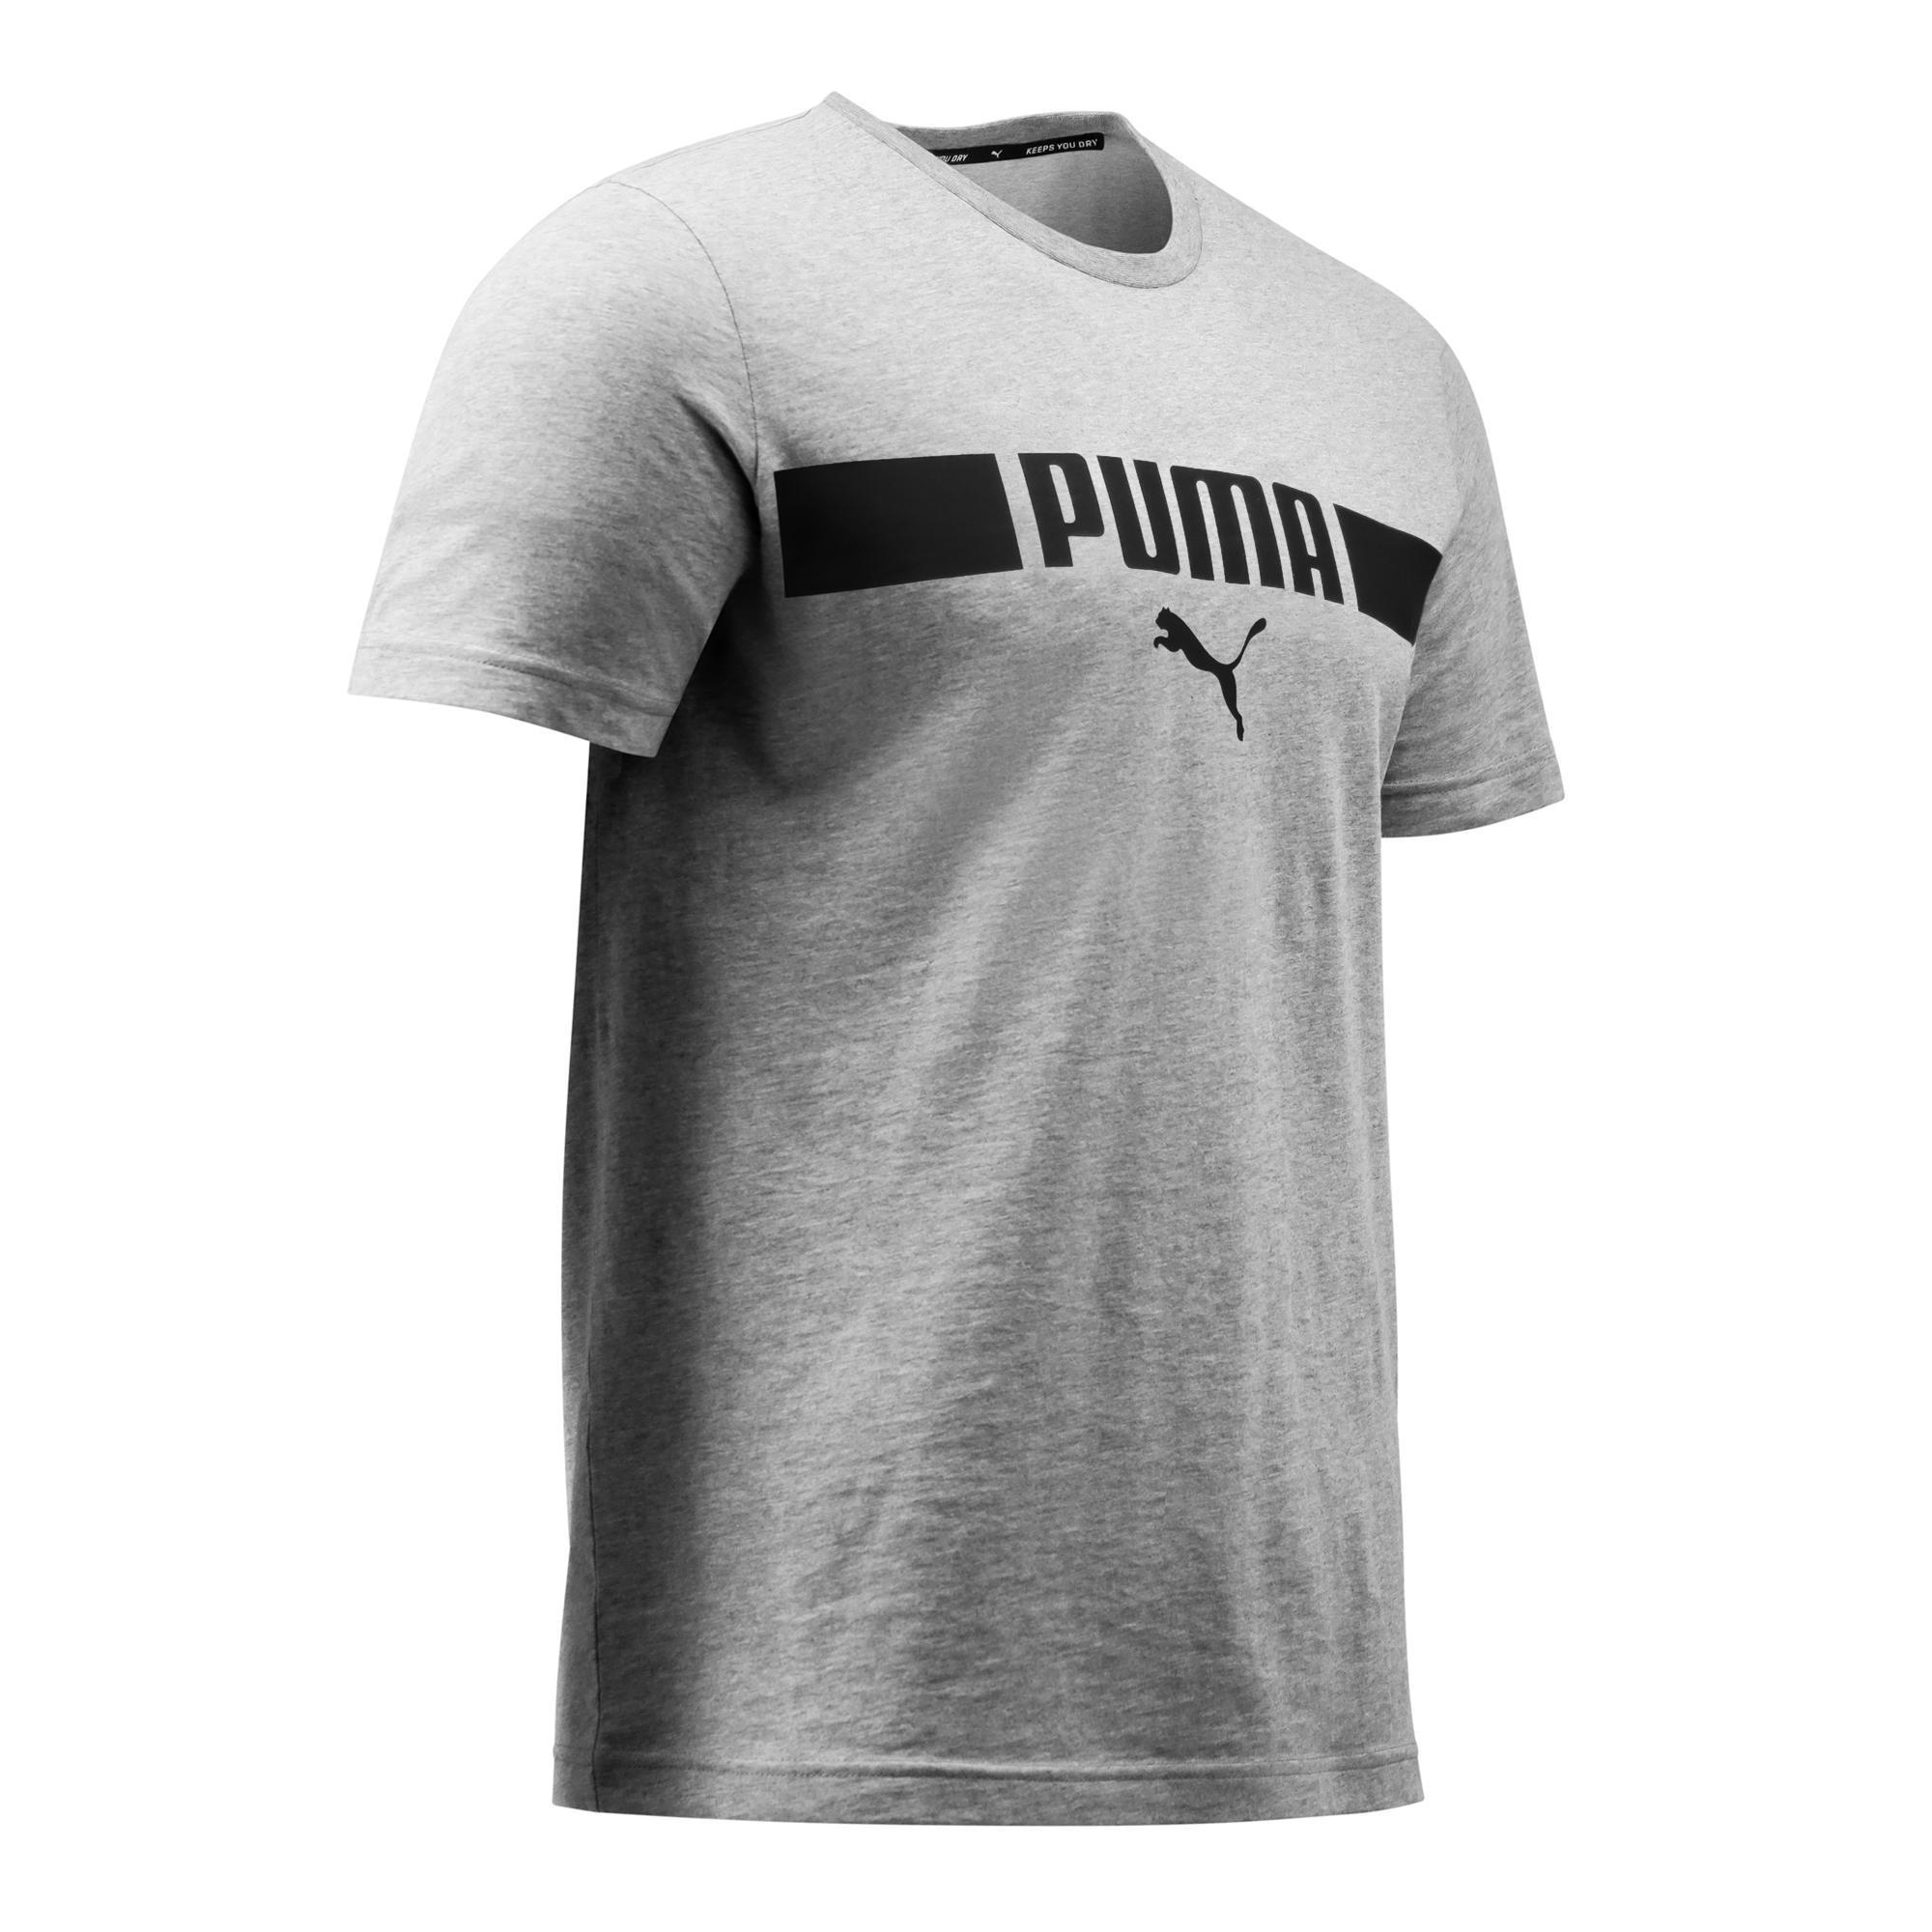 Camiseta Puma hombre gris con logotipo PUMA | Black Friday Decathlon 2020